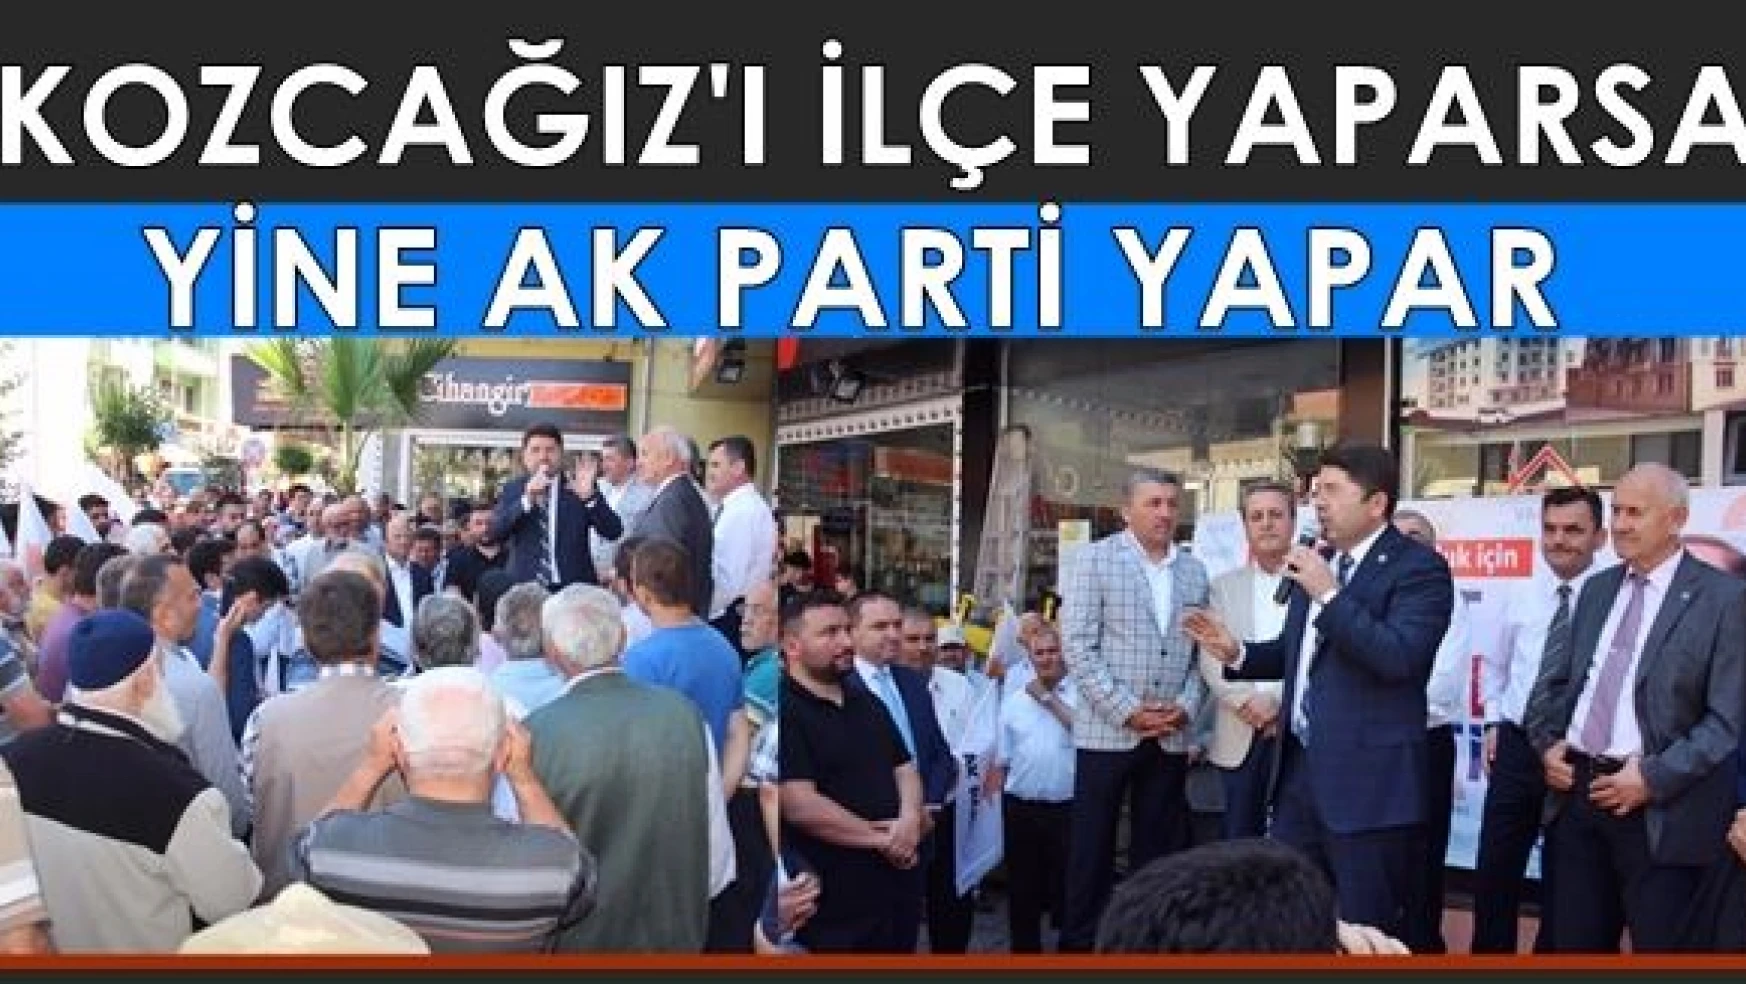 Kozcağız'ı İlçe yaparsa yine AK Parti yapar